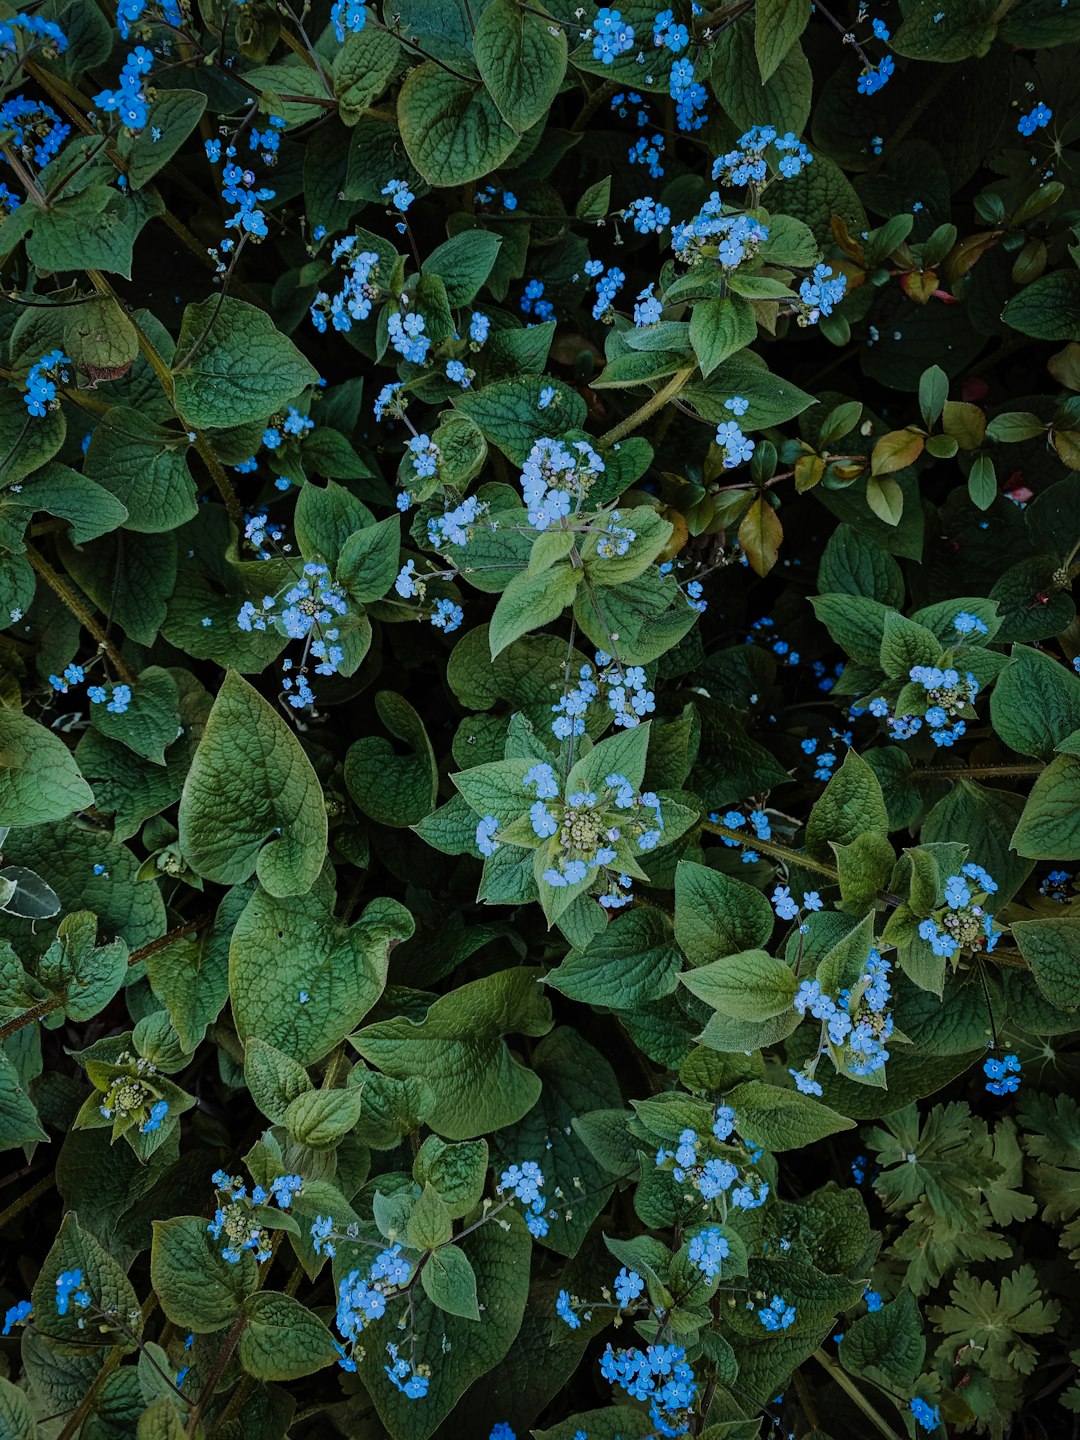 blue petaled flower blooming